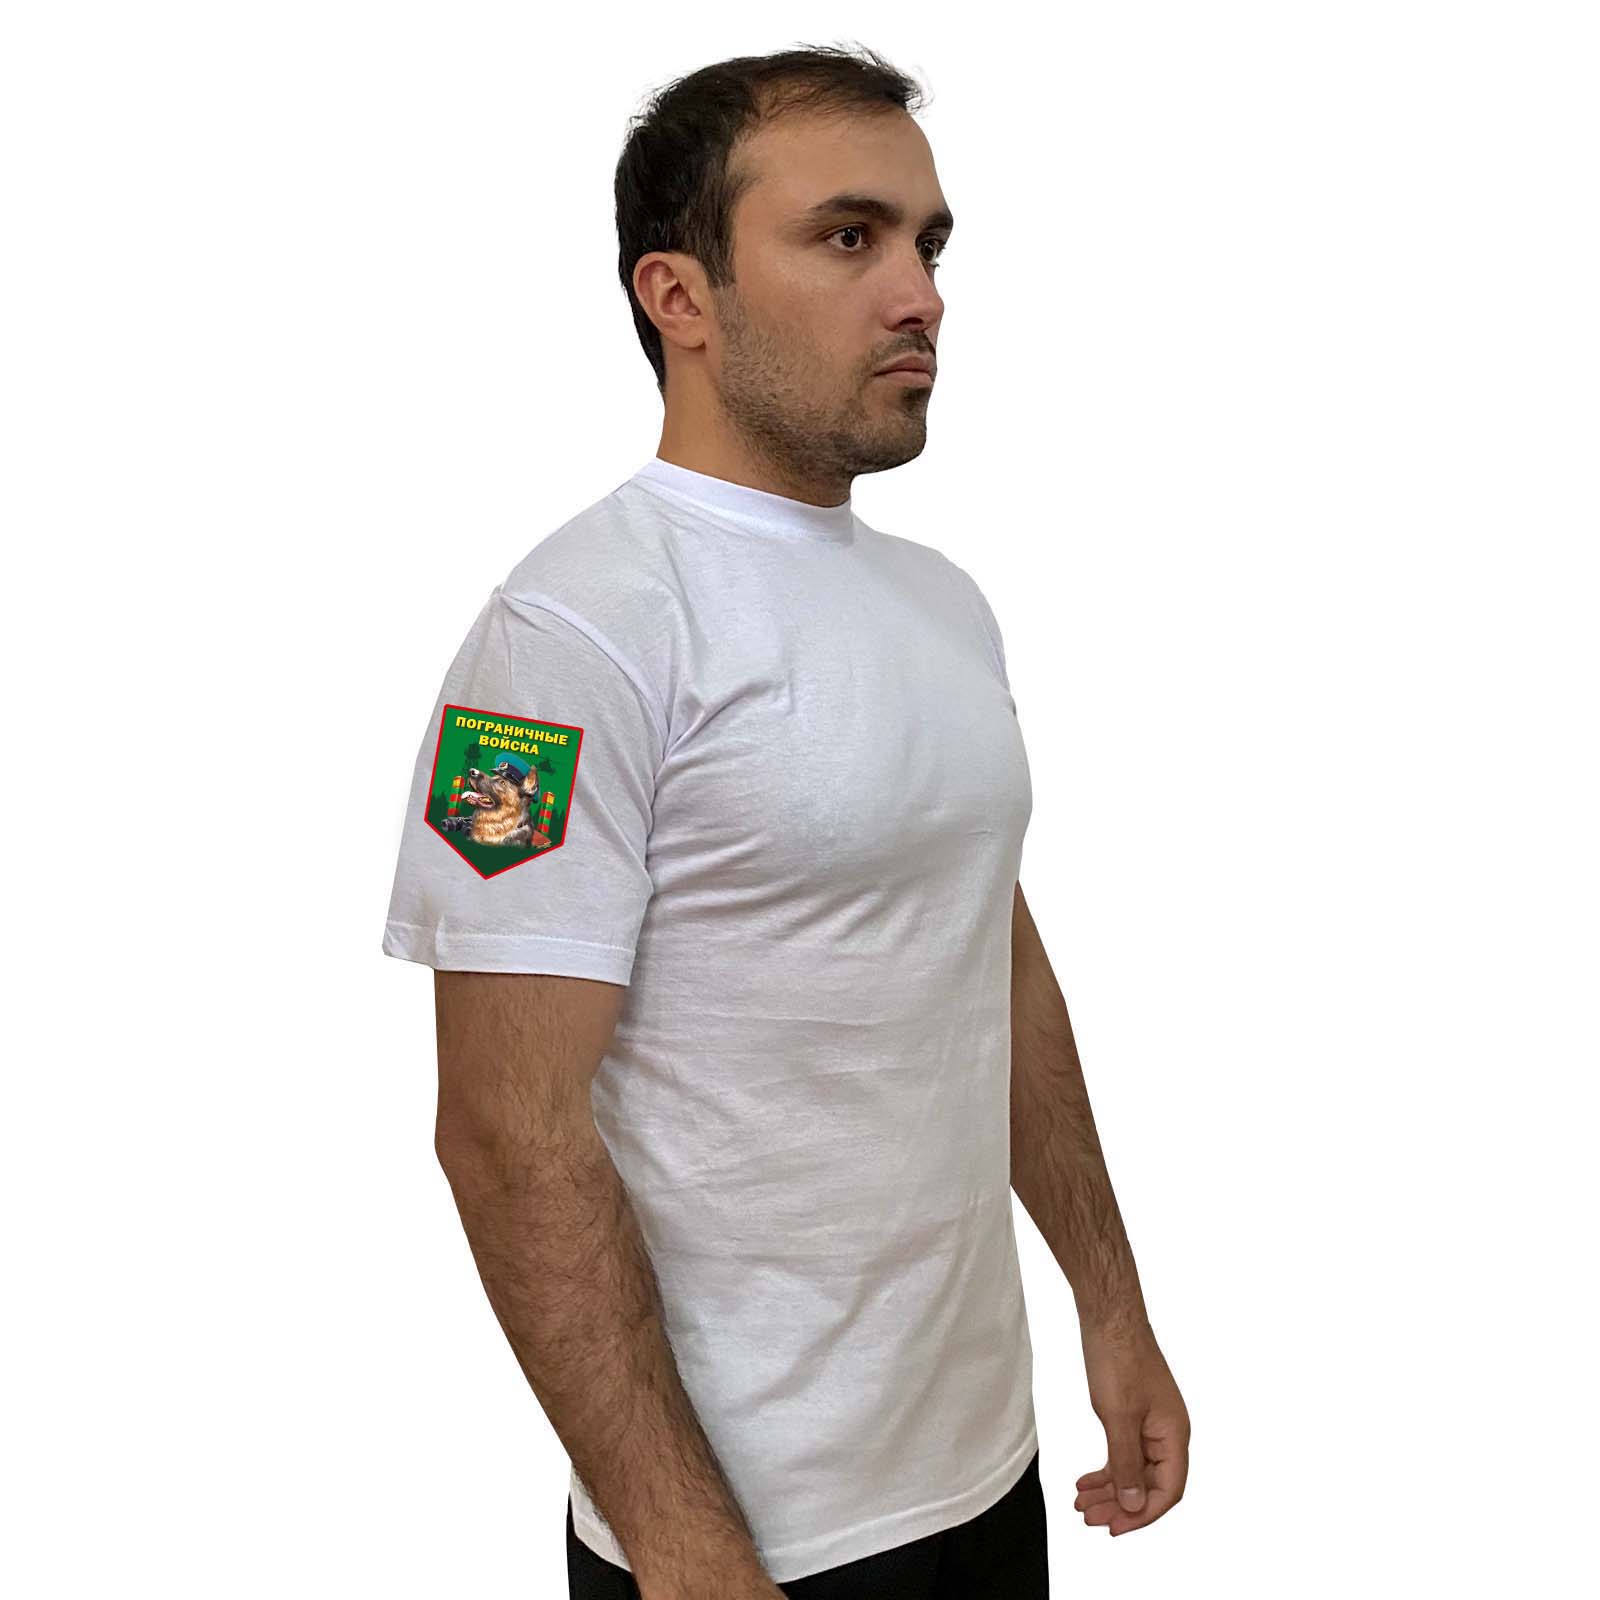 Белая футболка с термотрансфером "Пограничные войска" на рукаве